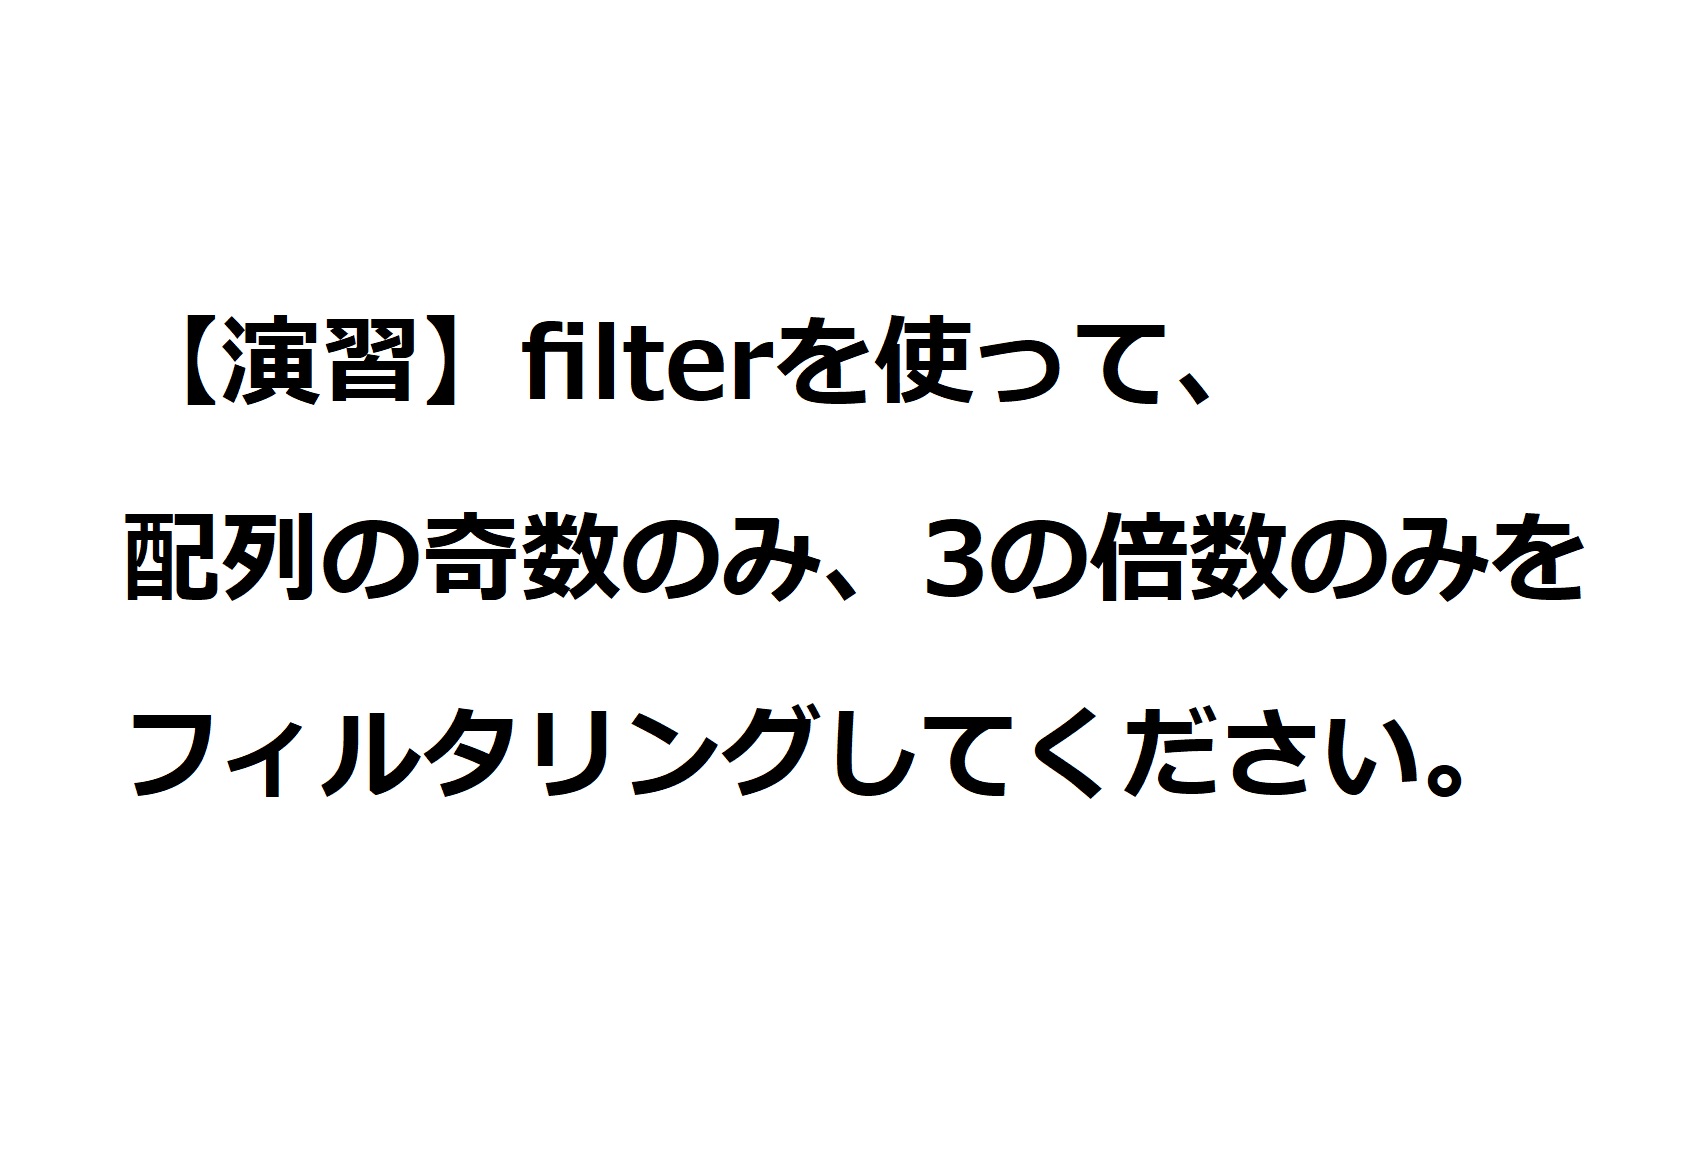 演習「filterを使った3の倍数のフィルタリング」の解答一例